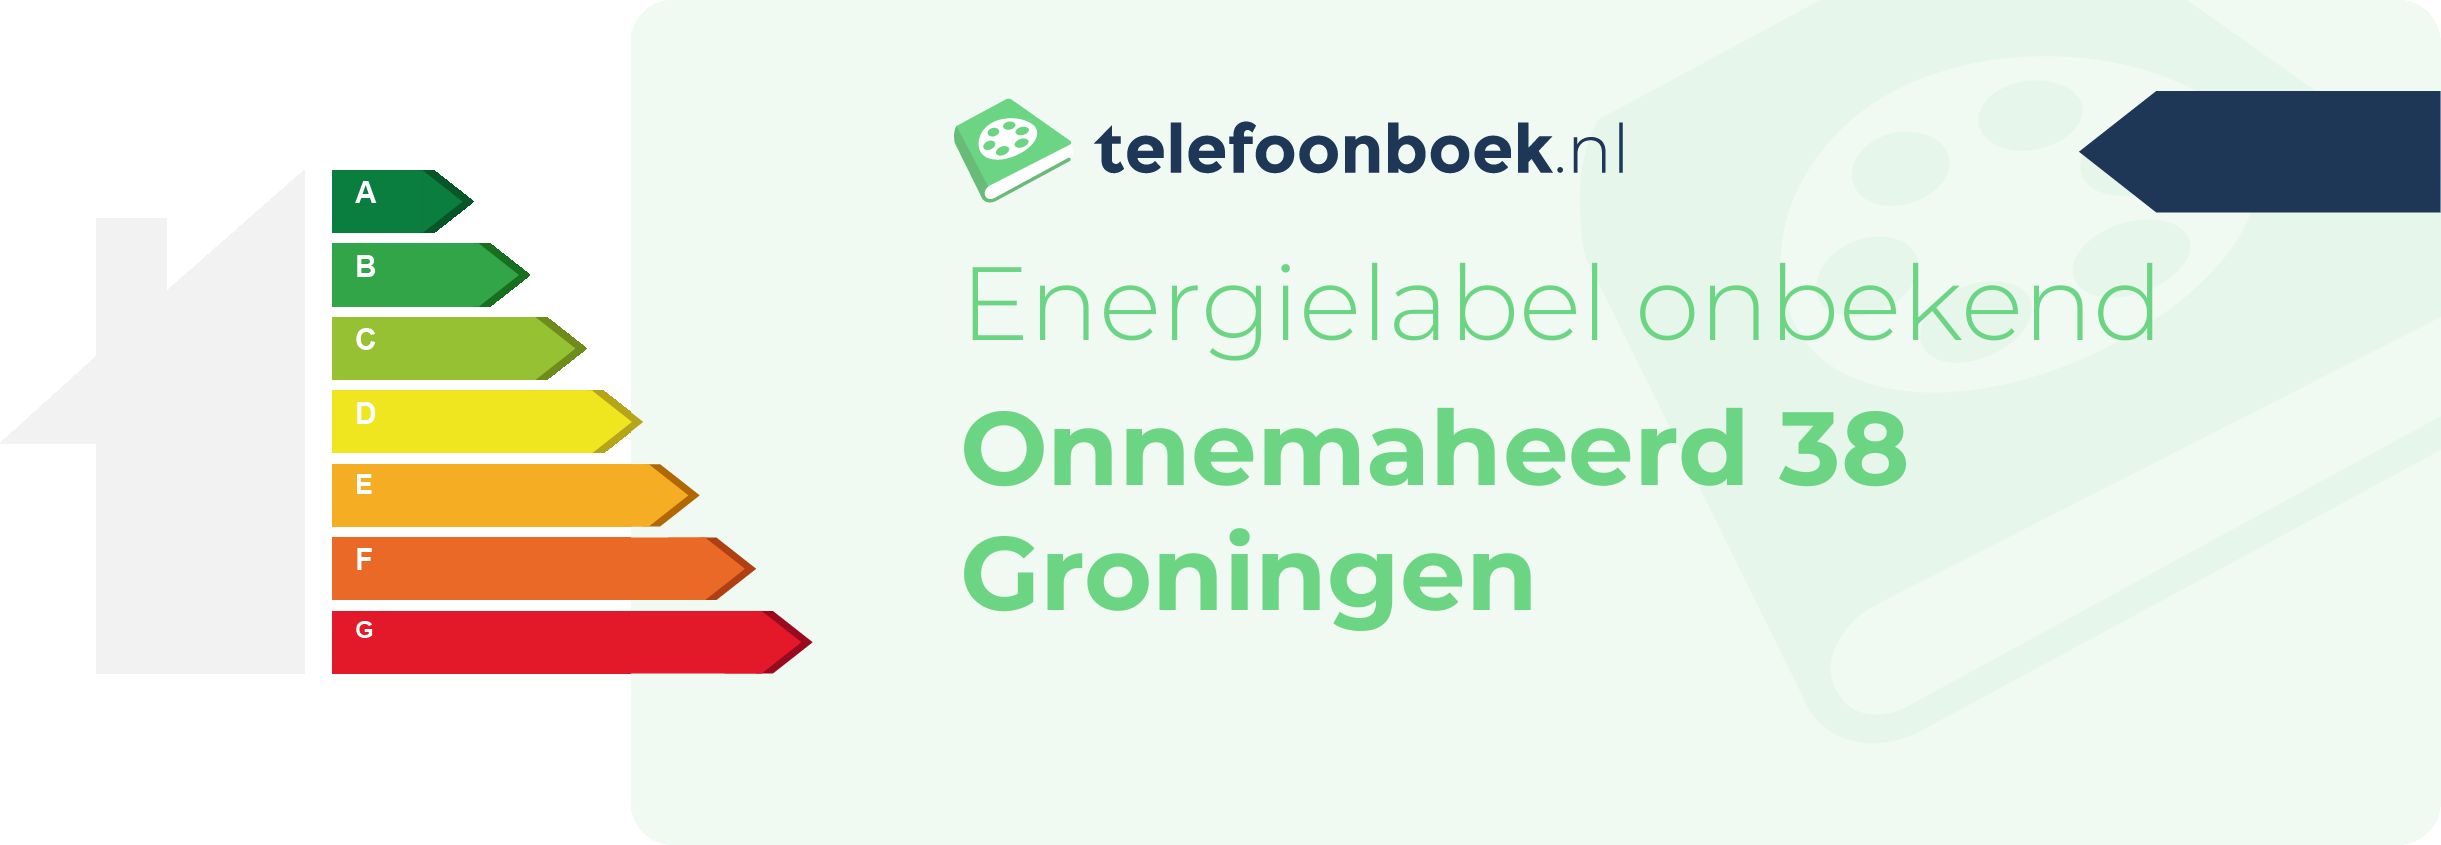 Energielabel Onnemaheerd 38 Groningen